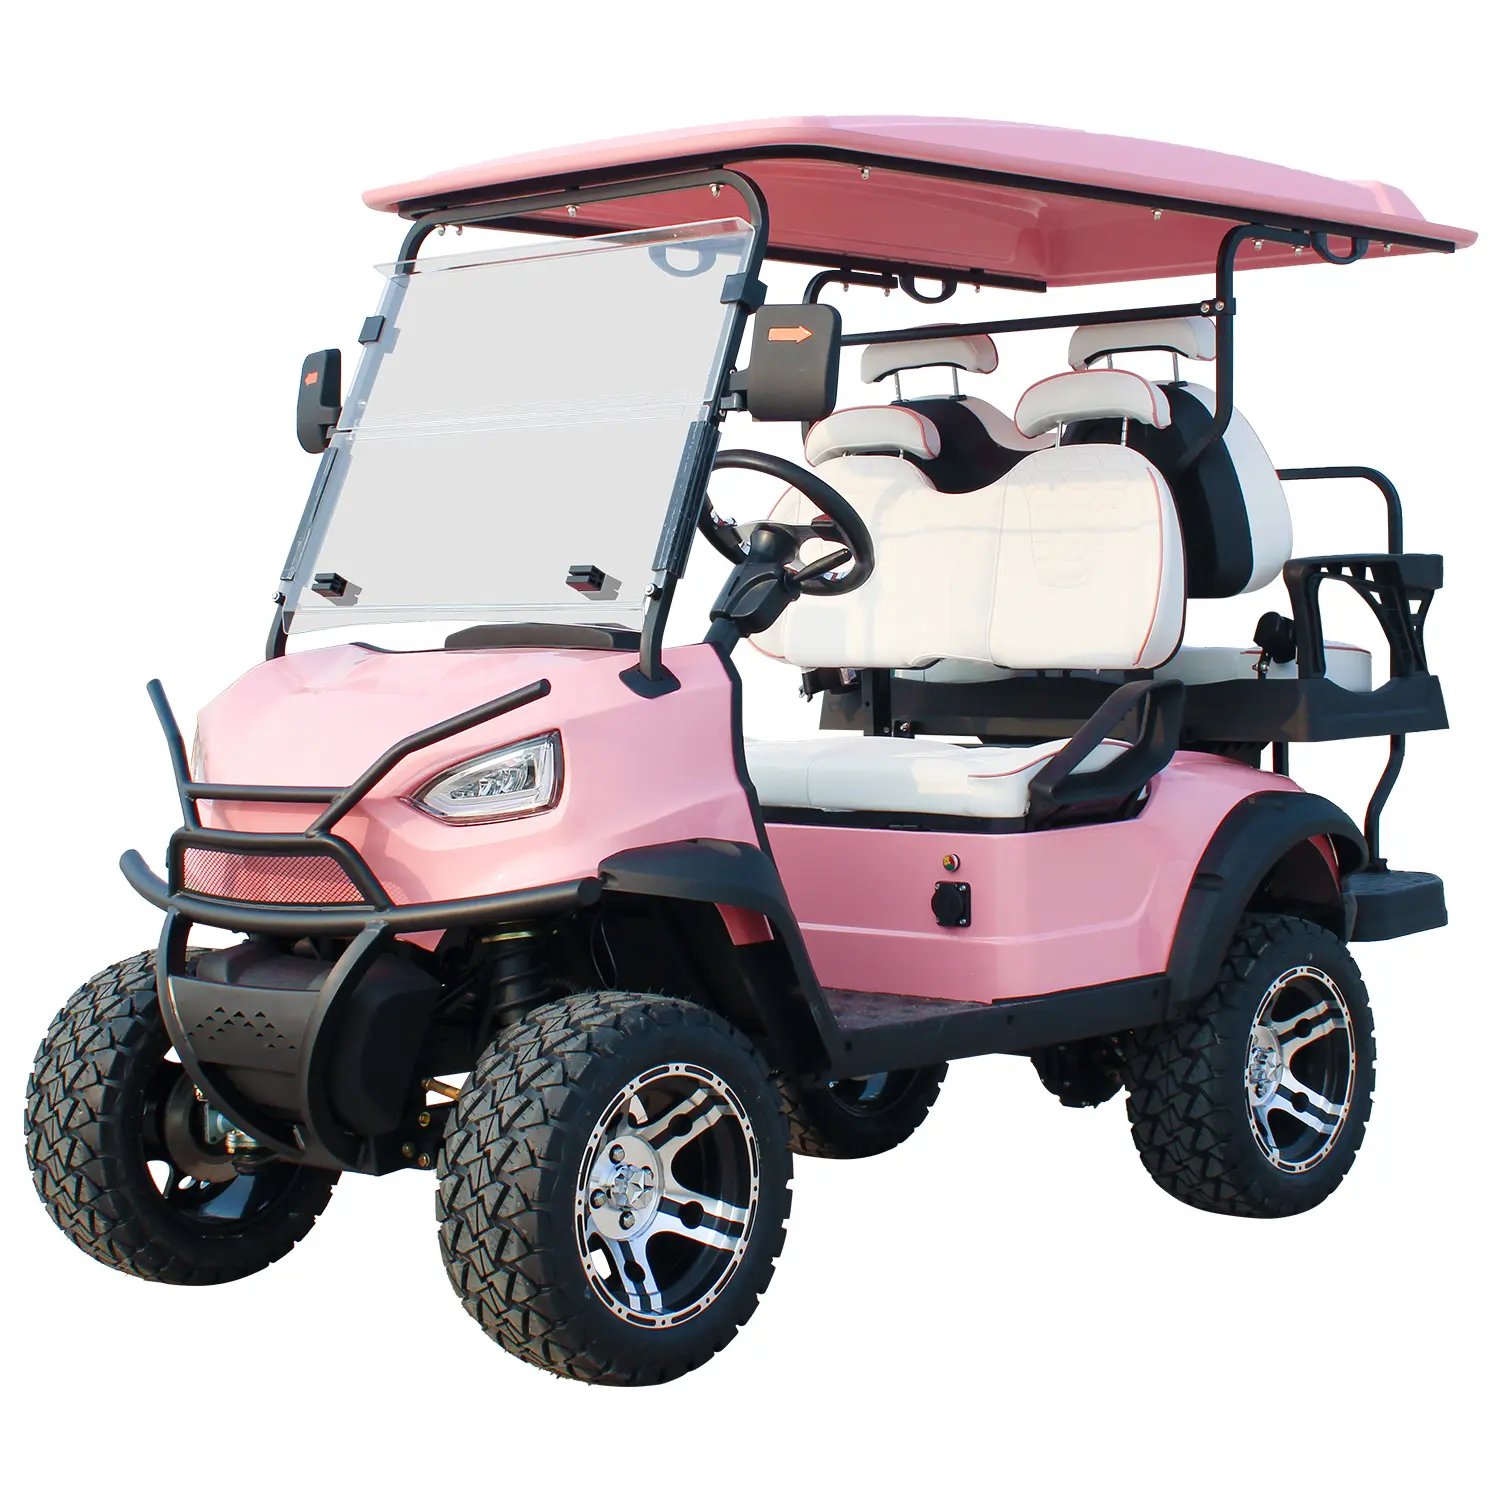 Carrito de golf estándar para coche de club a buen precio, carrito de palos de golf eléctrico, carrito de golf con batería de litio legal de calle todoterreno de 48V y 72v